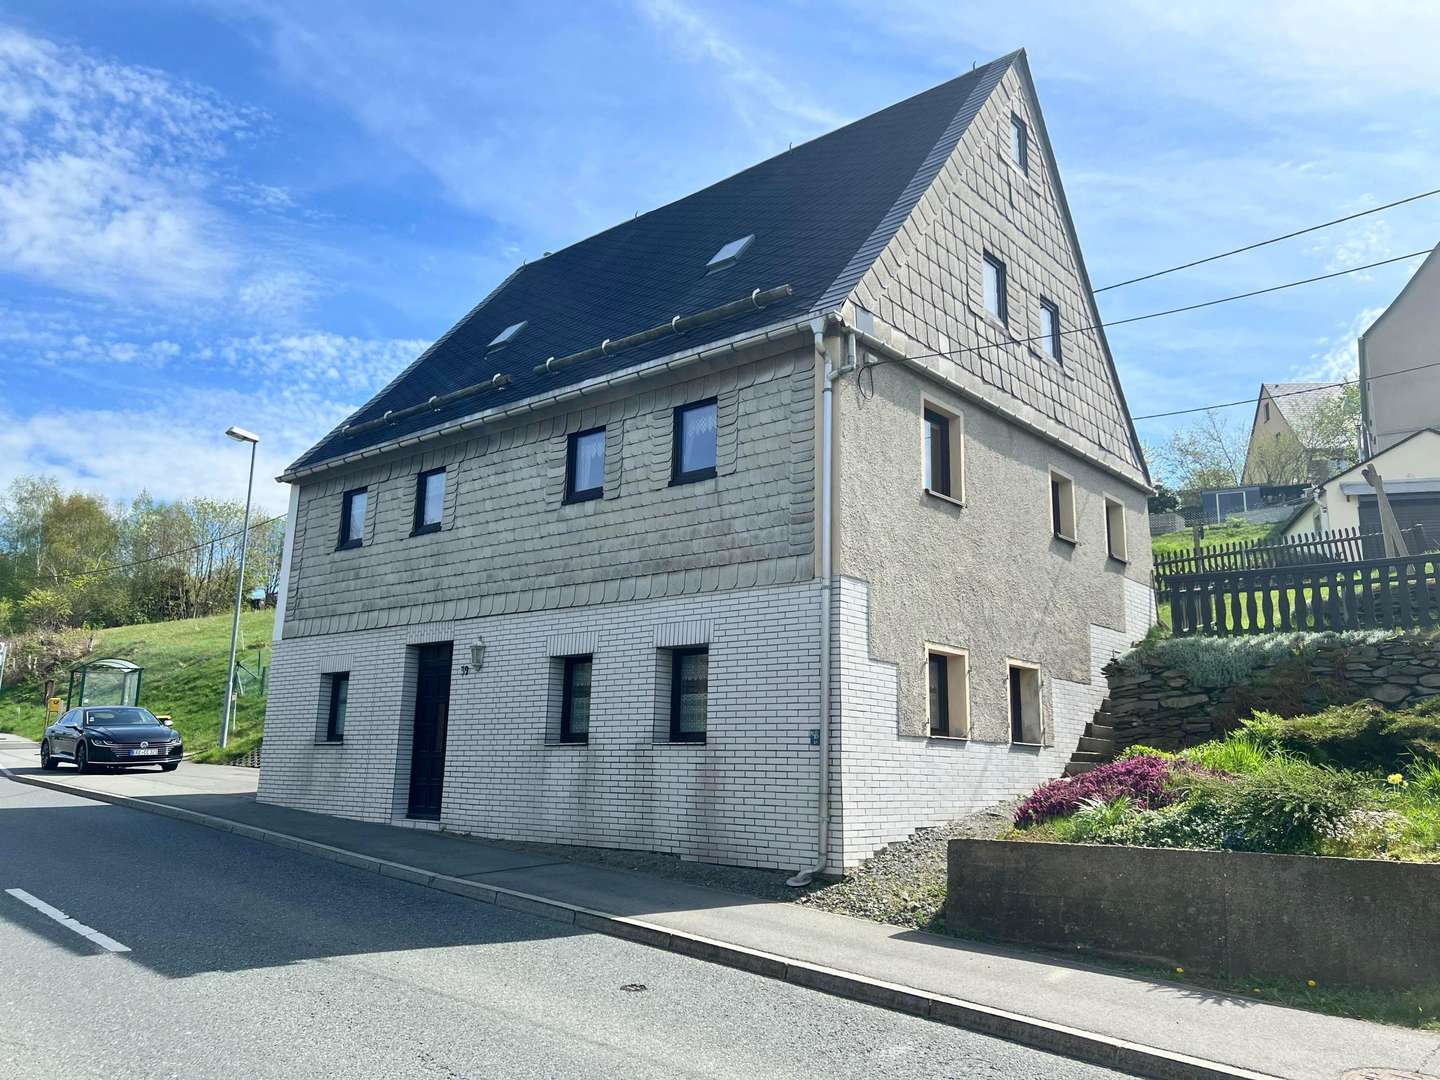 IMG_1288 - Einfamilienhaus in 09429 Wolkenstein, Gehringswalde mit 90m² kaufen